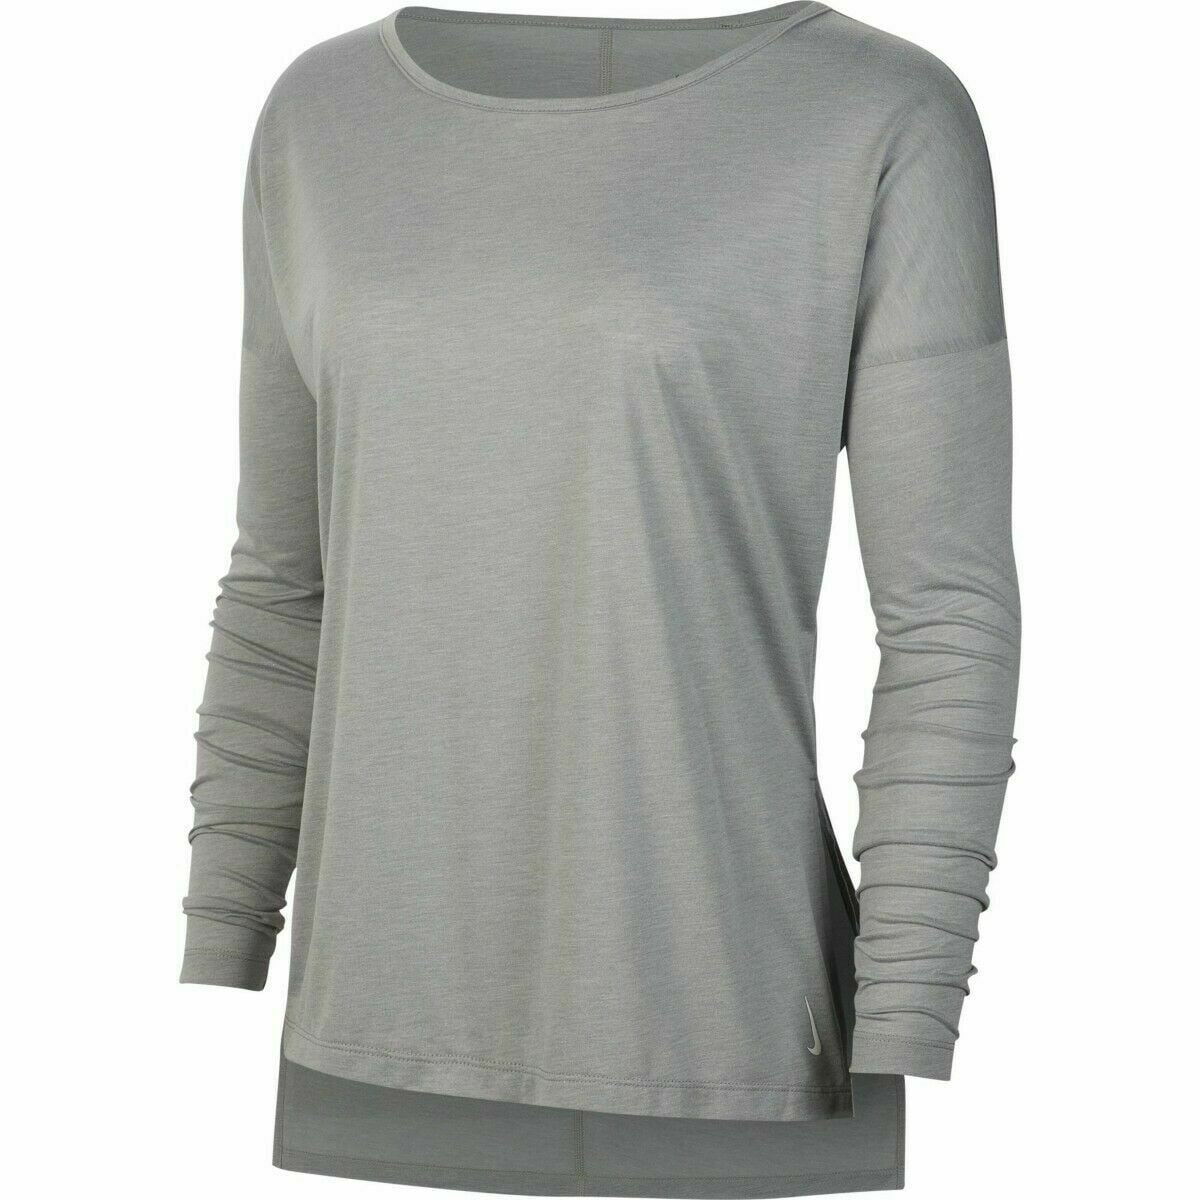 Nike Yoga Shirt Women's Long Sleeve Grey CJ9324-073 